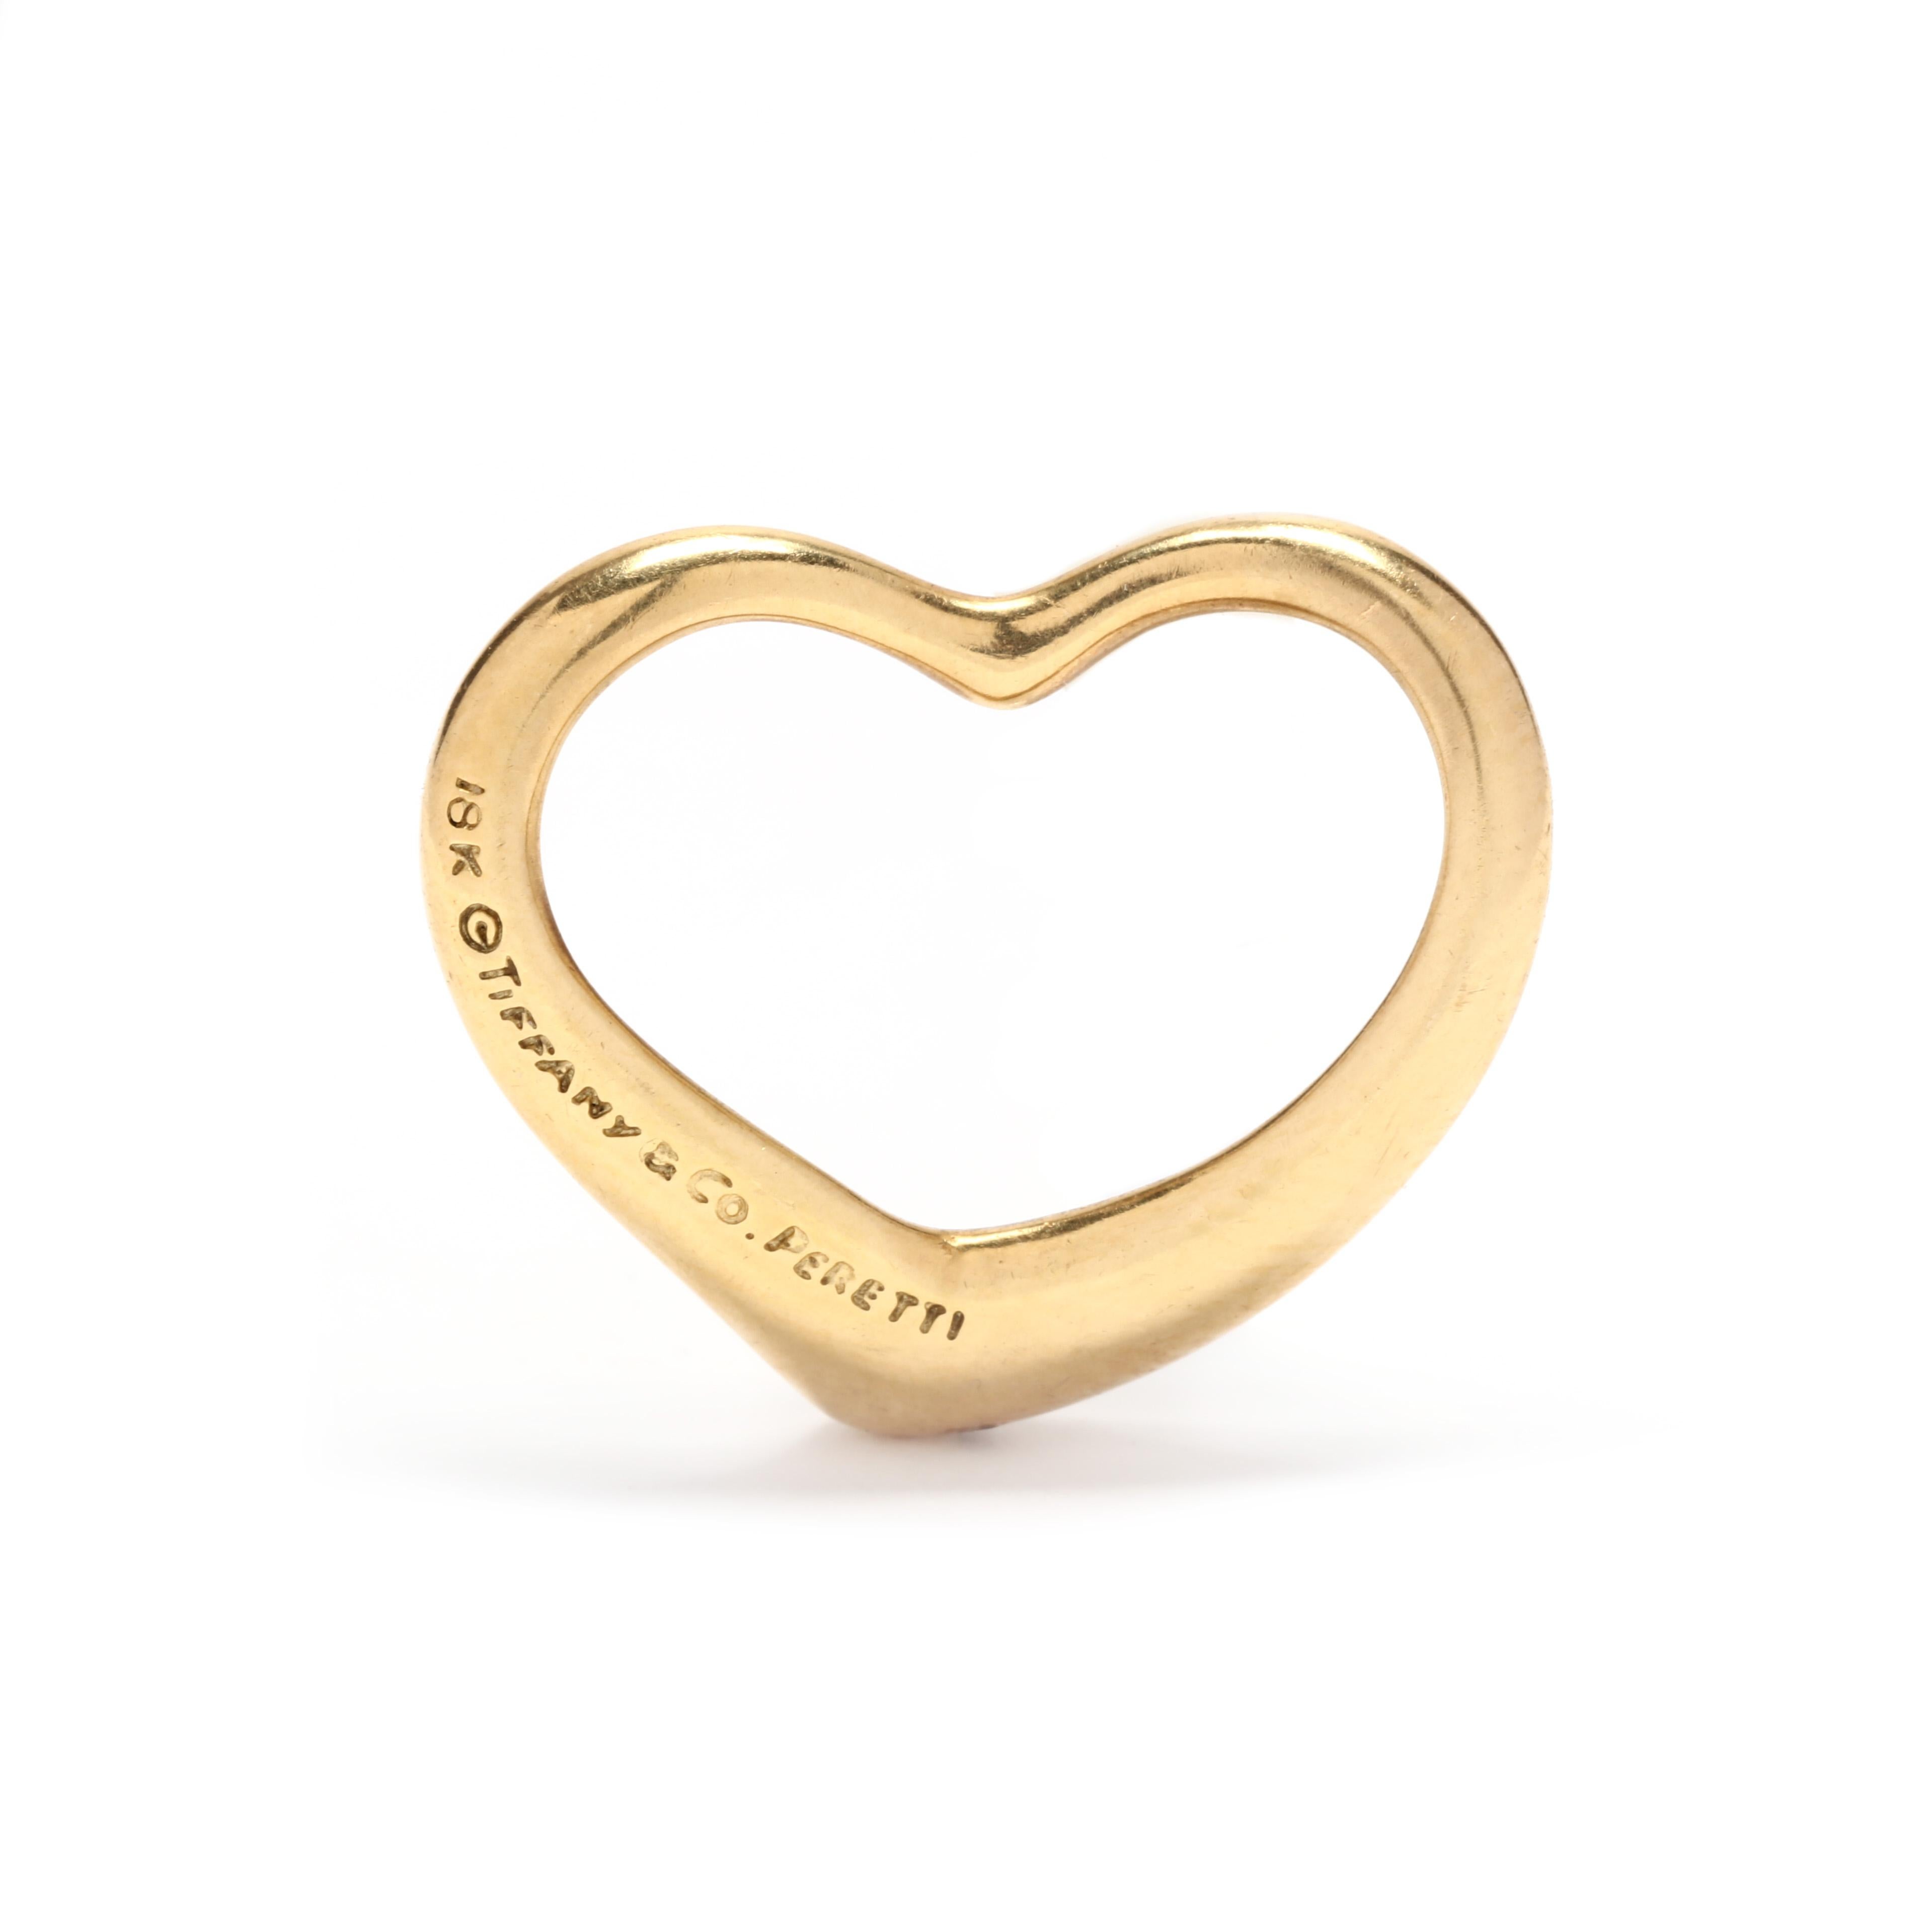 Une breloque de cœur en or jaune 18 carats conçue par Elsa Peretti pour Tiffany and Company. Ce charme présente un motif de cœur ouvert qui peut être ajouté à n'importe quelle chaîne ou corde !

Longueur : 3/4 po.

Largeur : 11/16 in.

Poids : 2,50